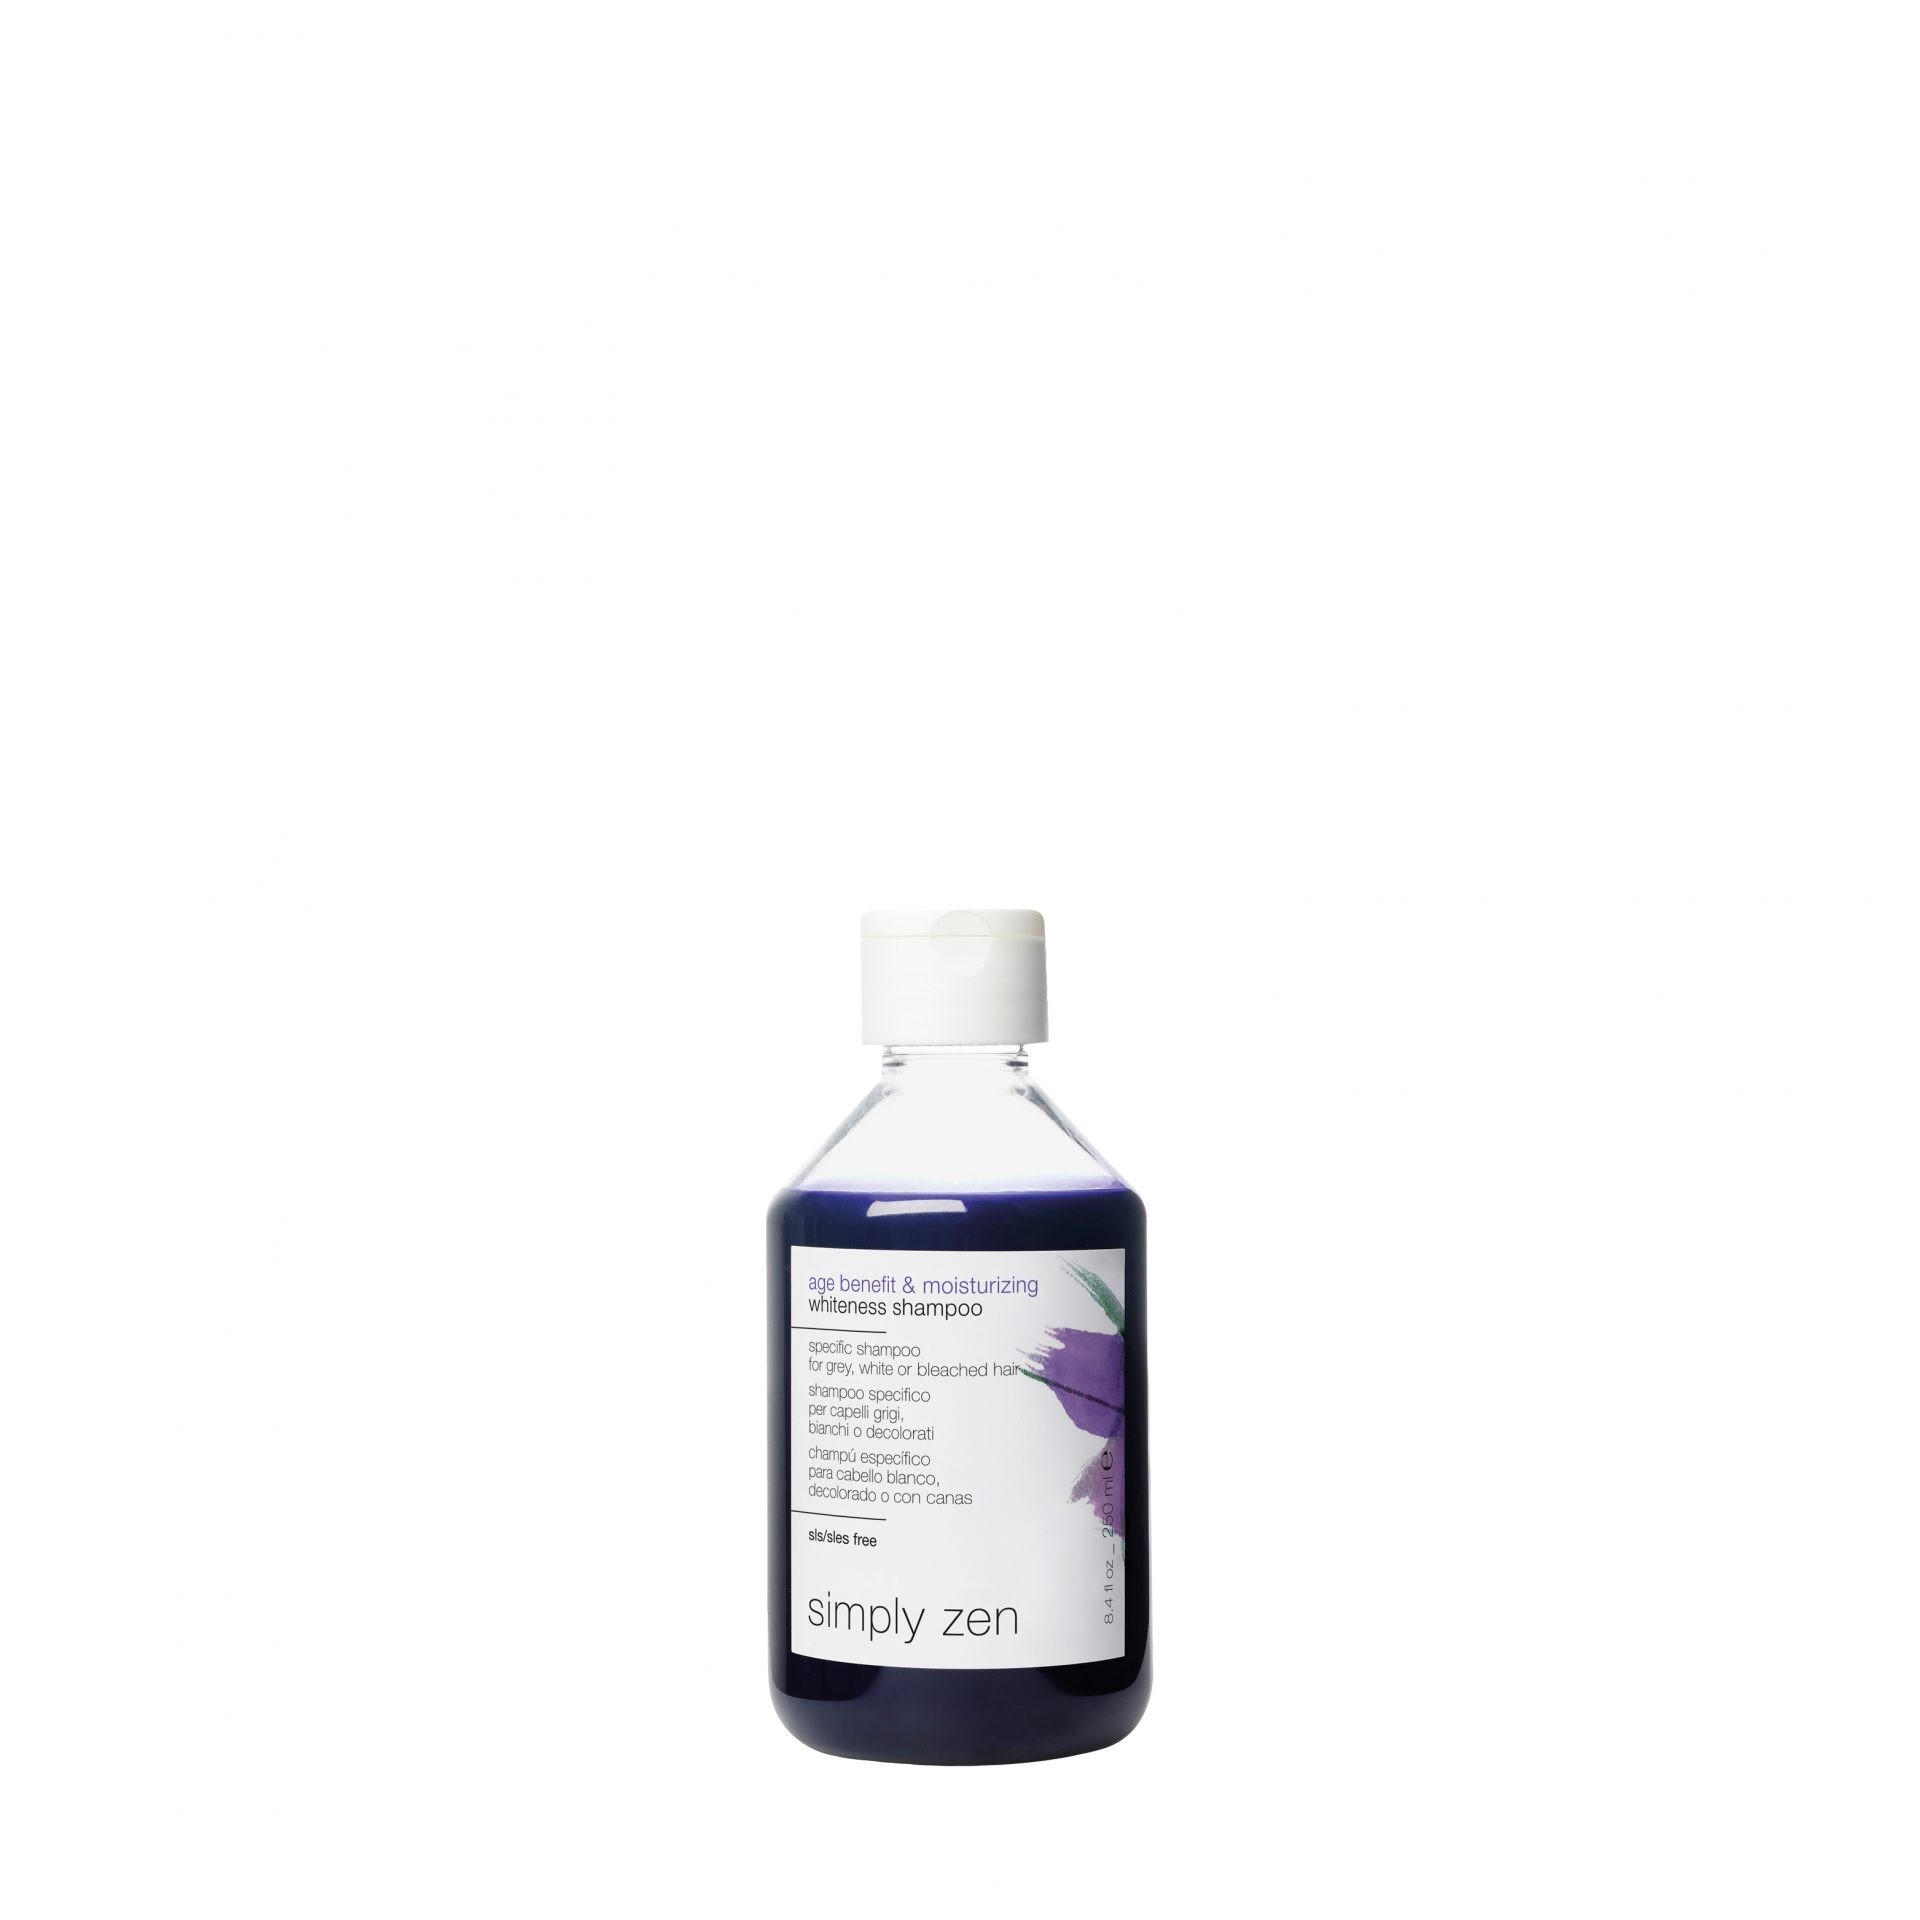 26 IMG SZ singole prodotti 1500x1500px 72 DPI age benefit and moisturizing whiteness shampoo